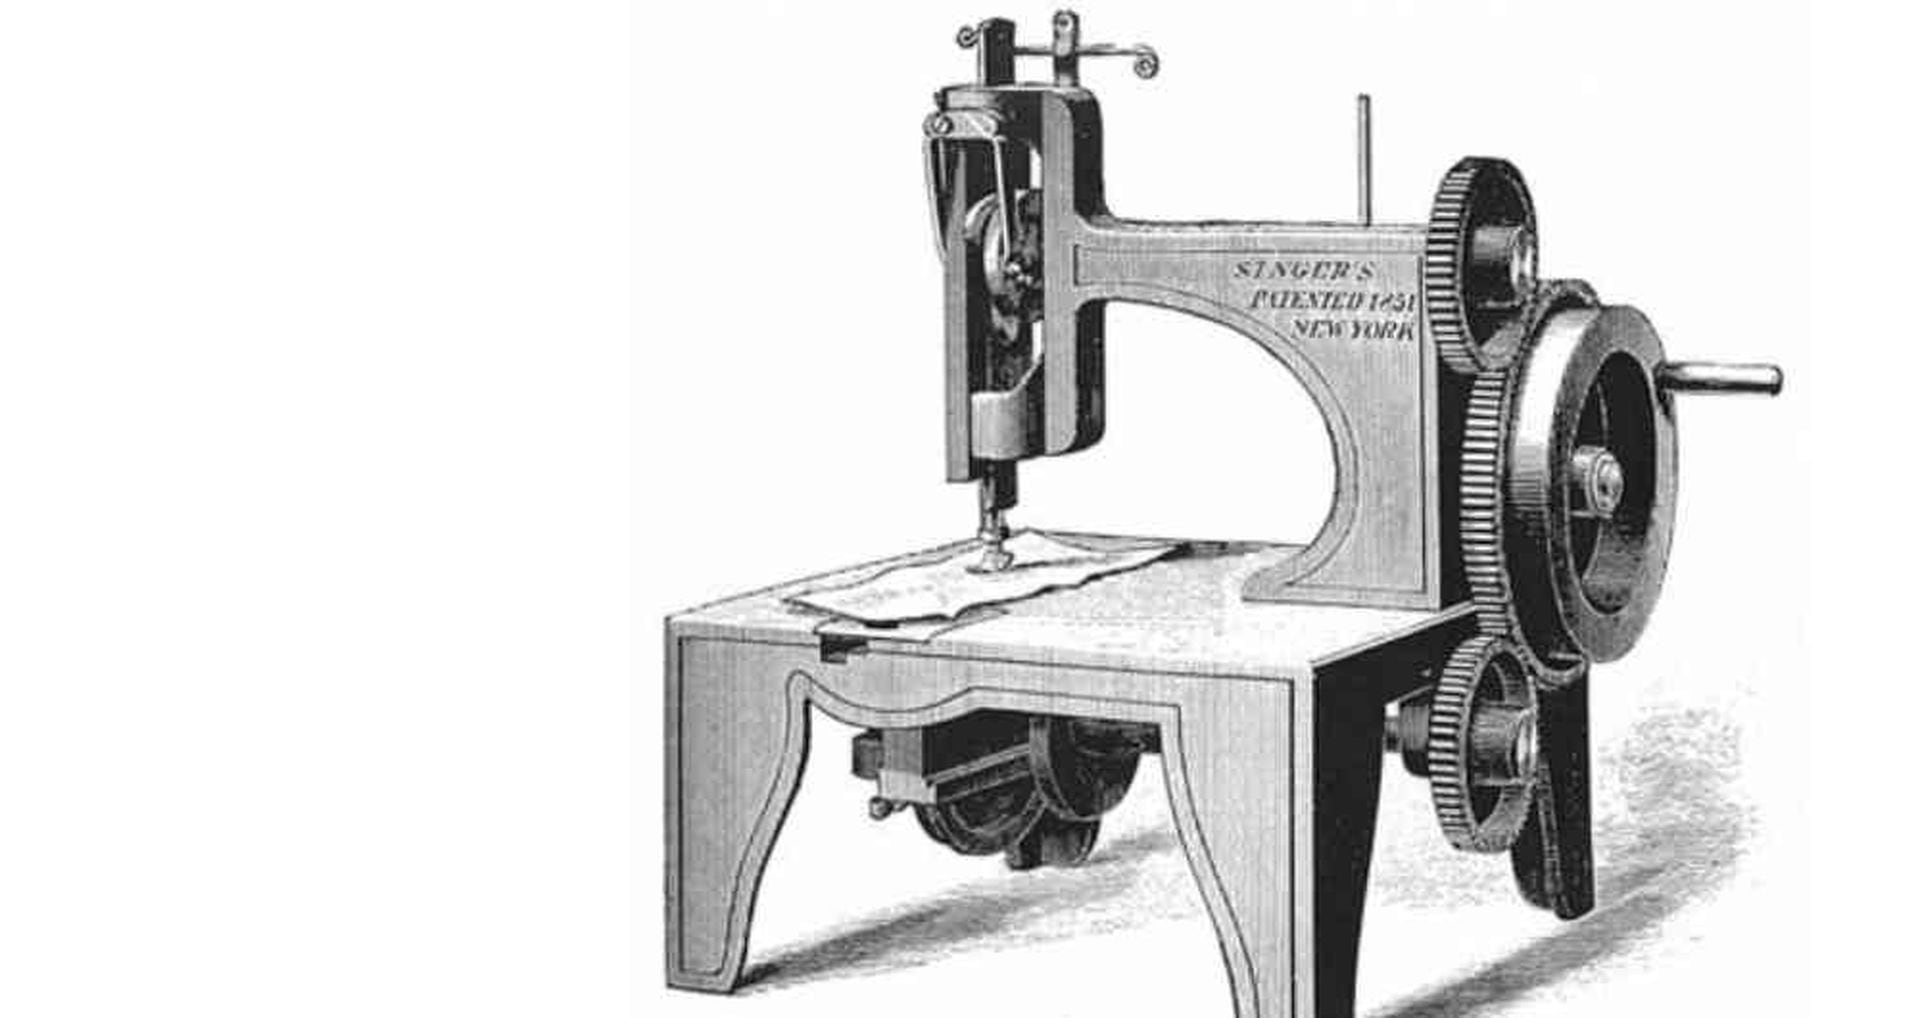 Cómo máquina de coser Singer cambió la vida de millones de en todo el mundo